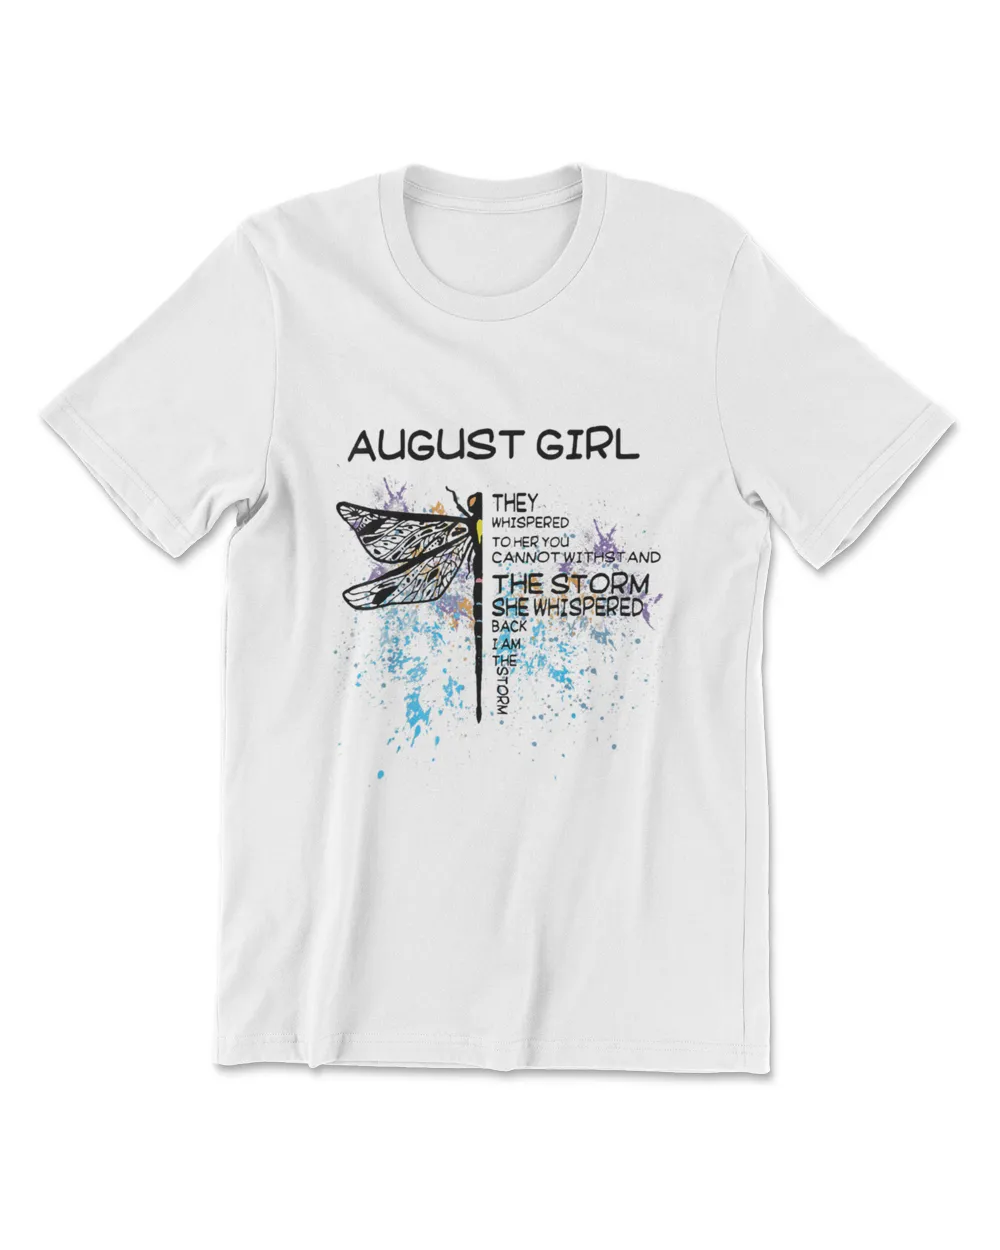 August Girl - Feminism - Feminist